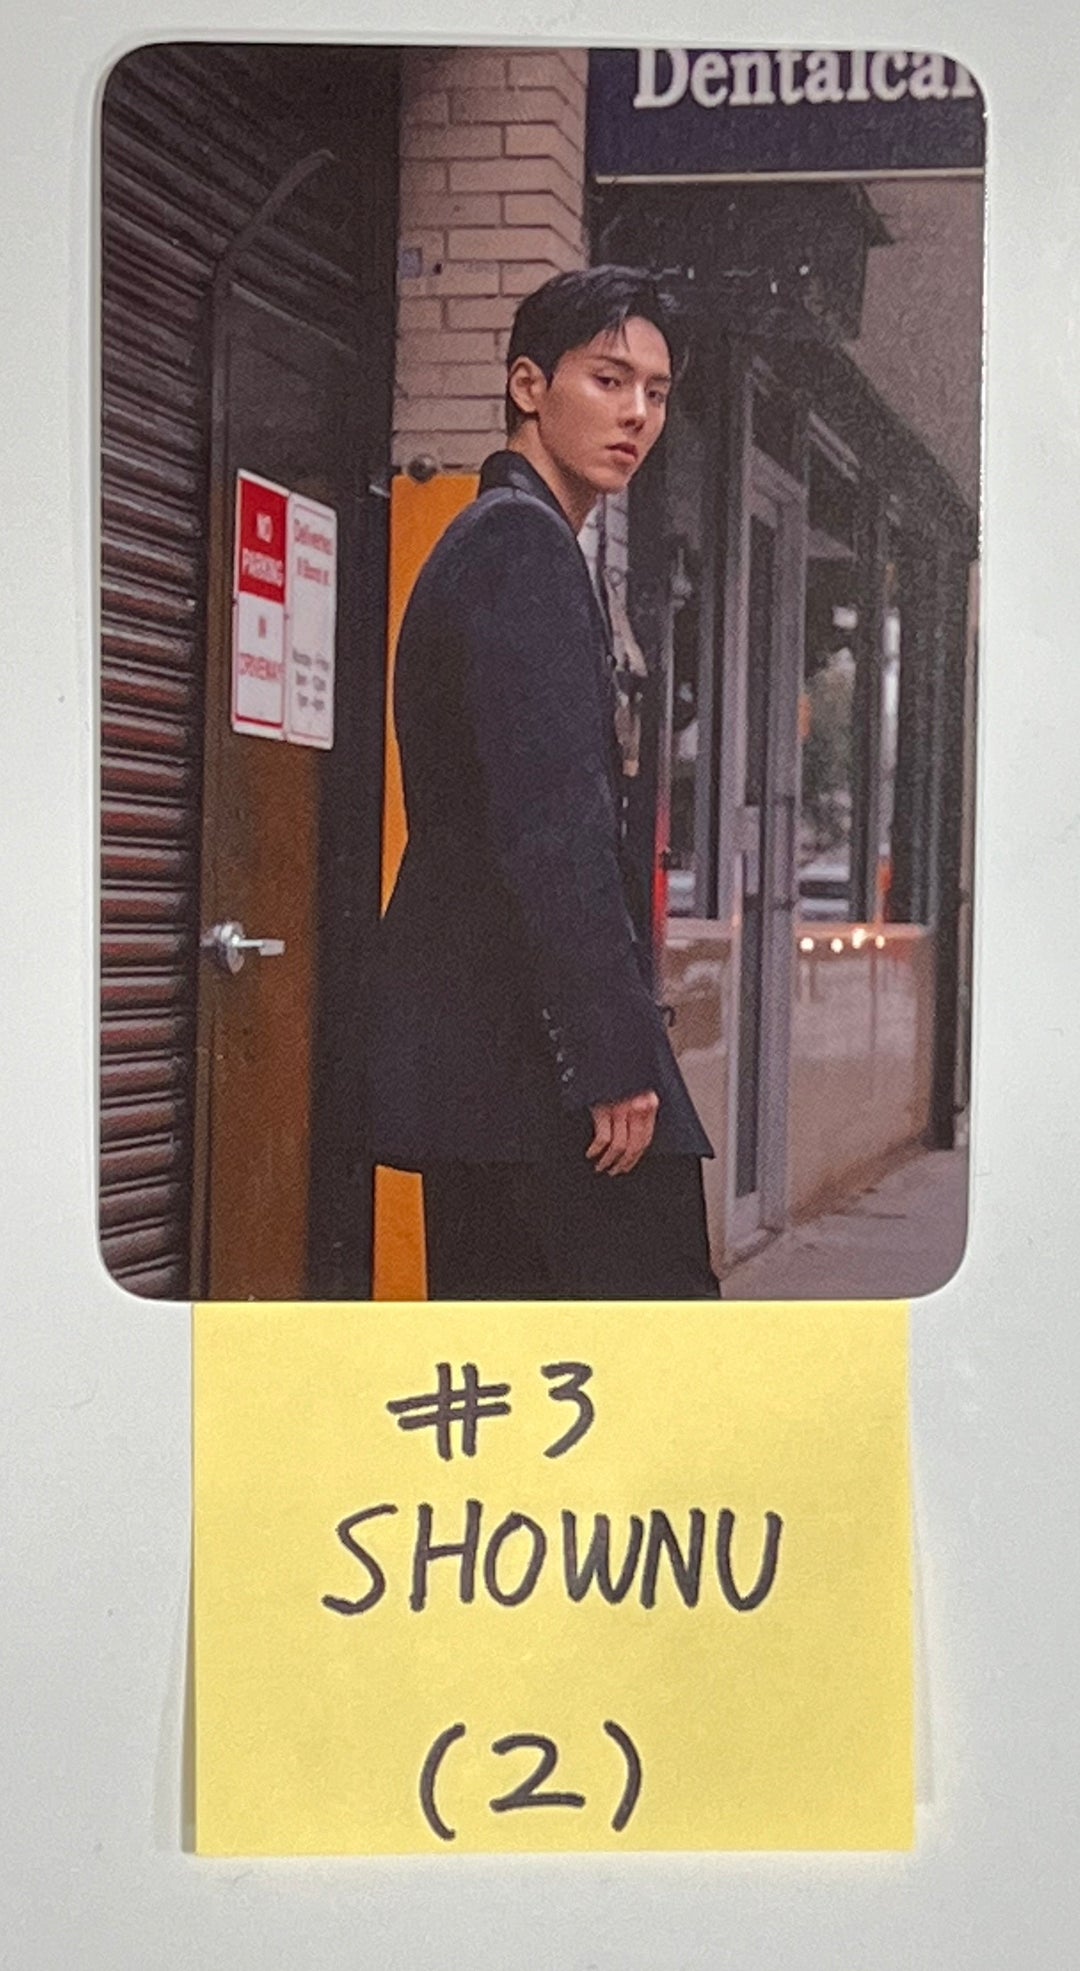 ショヌ X ヒョンウォン「On My Way」1st 写真集 - 公式ランダムフォトカード [23.12.19]